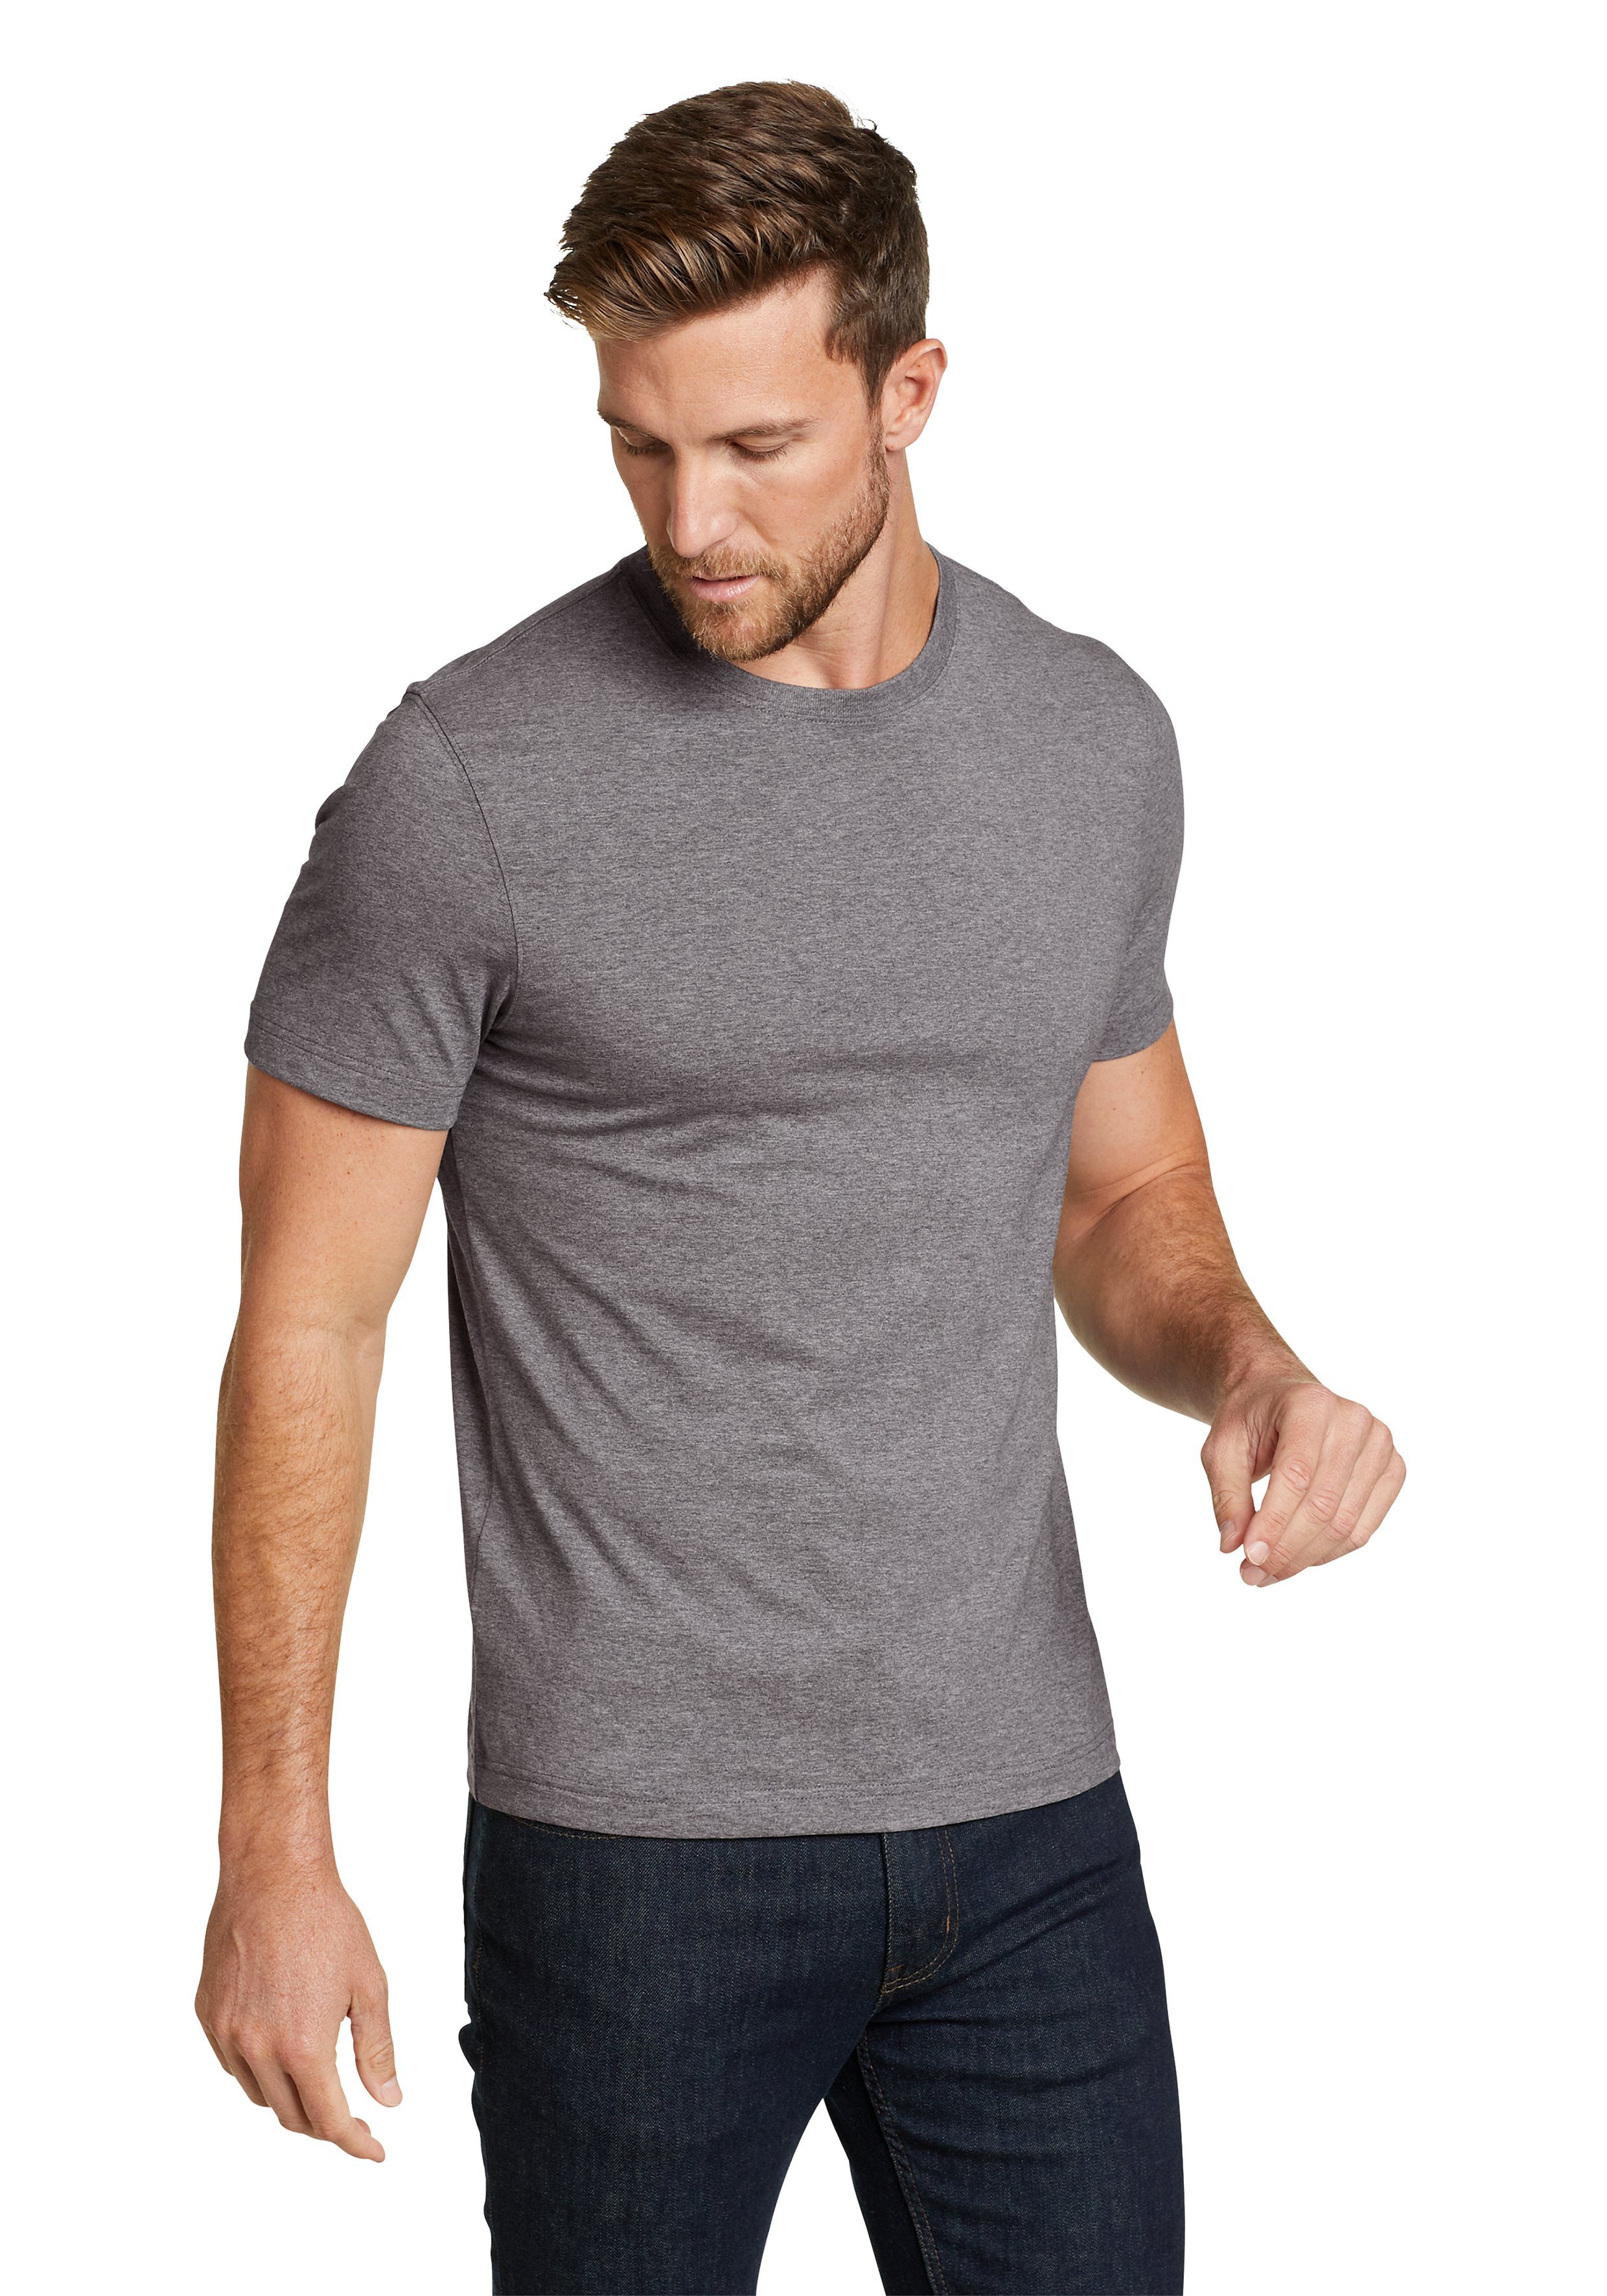 Eddie Bauer Meliertes fit Wash Shirt - Legend Slim - Baumwolle T-Shirt Grau 100